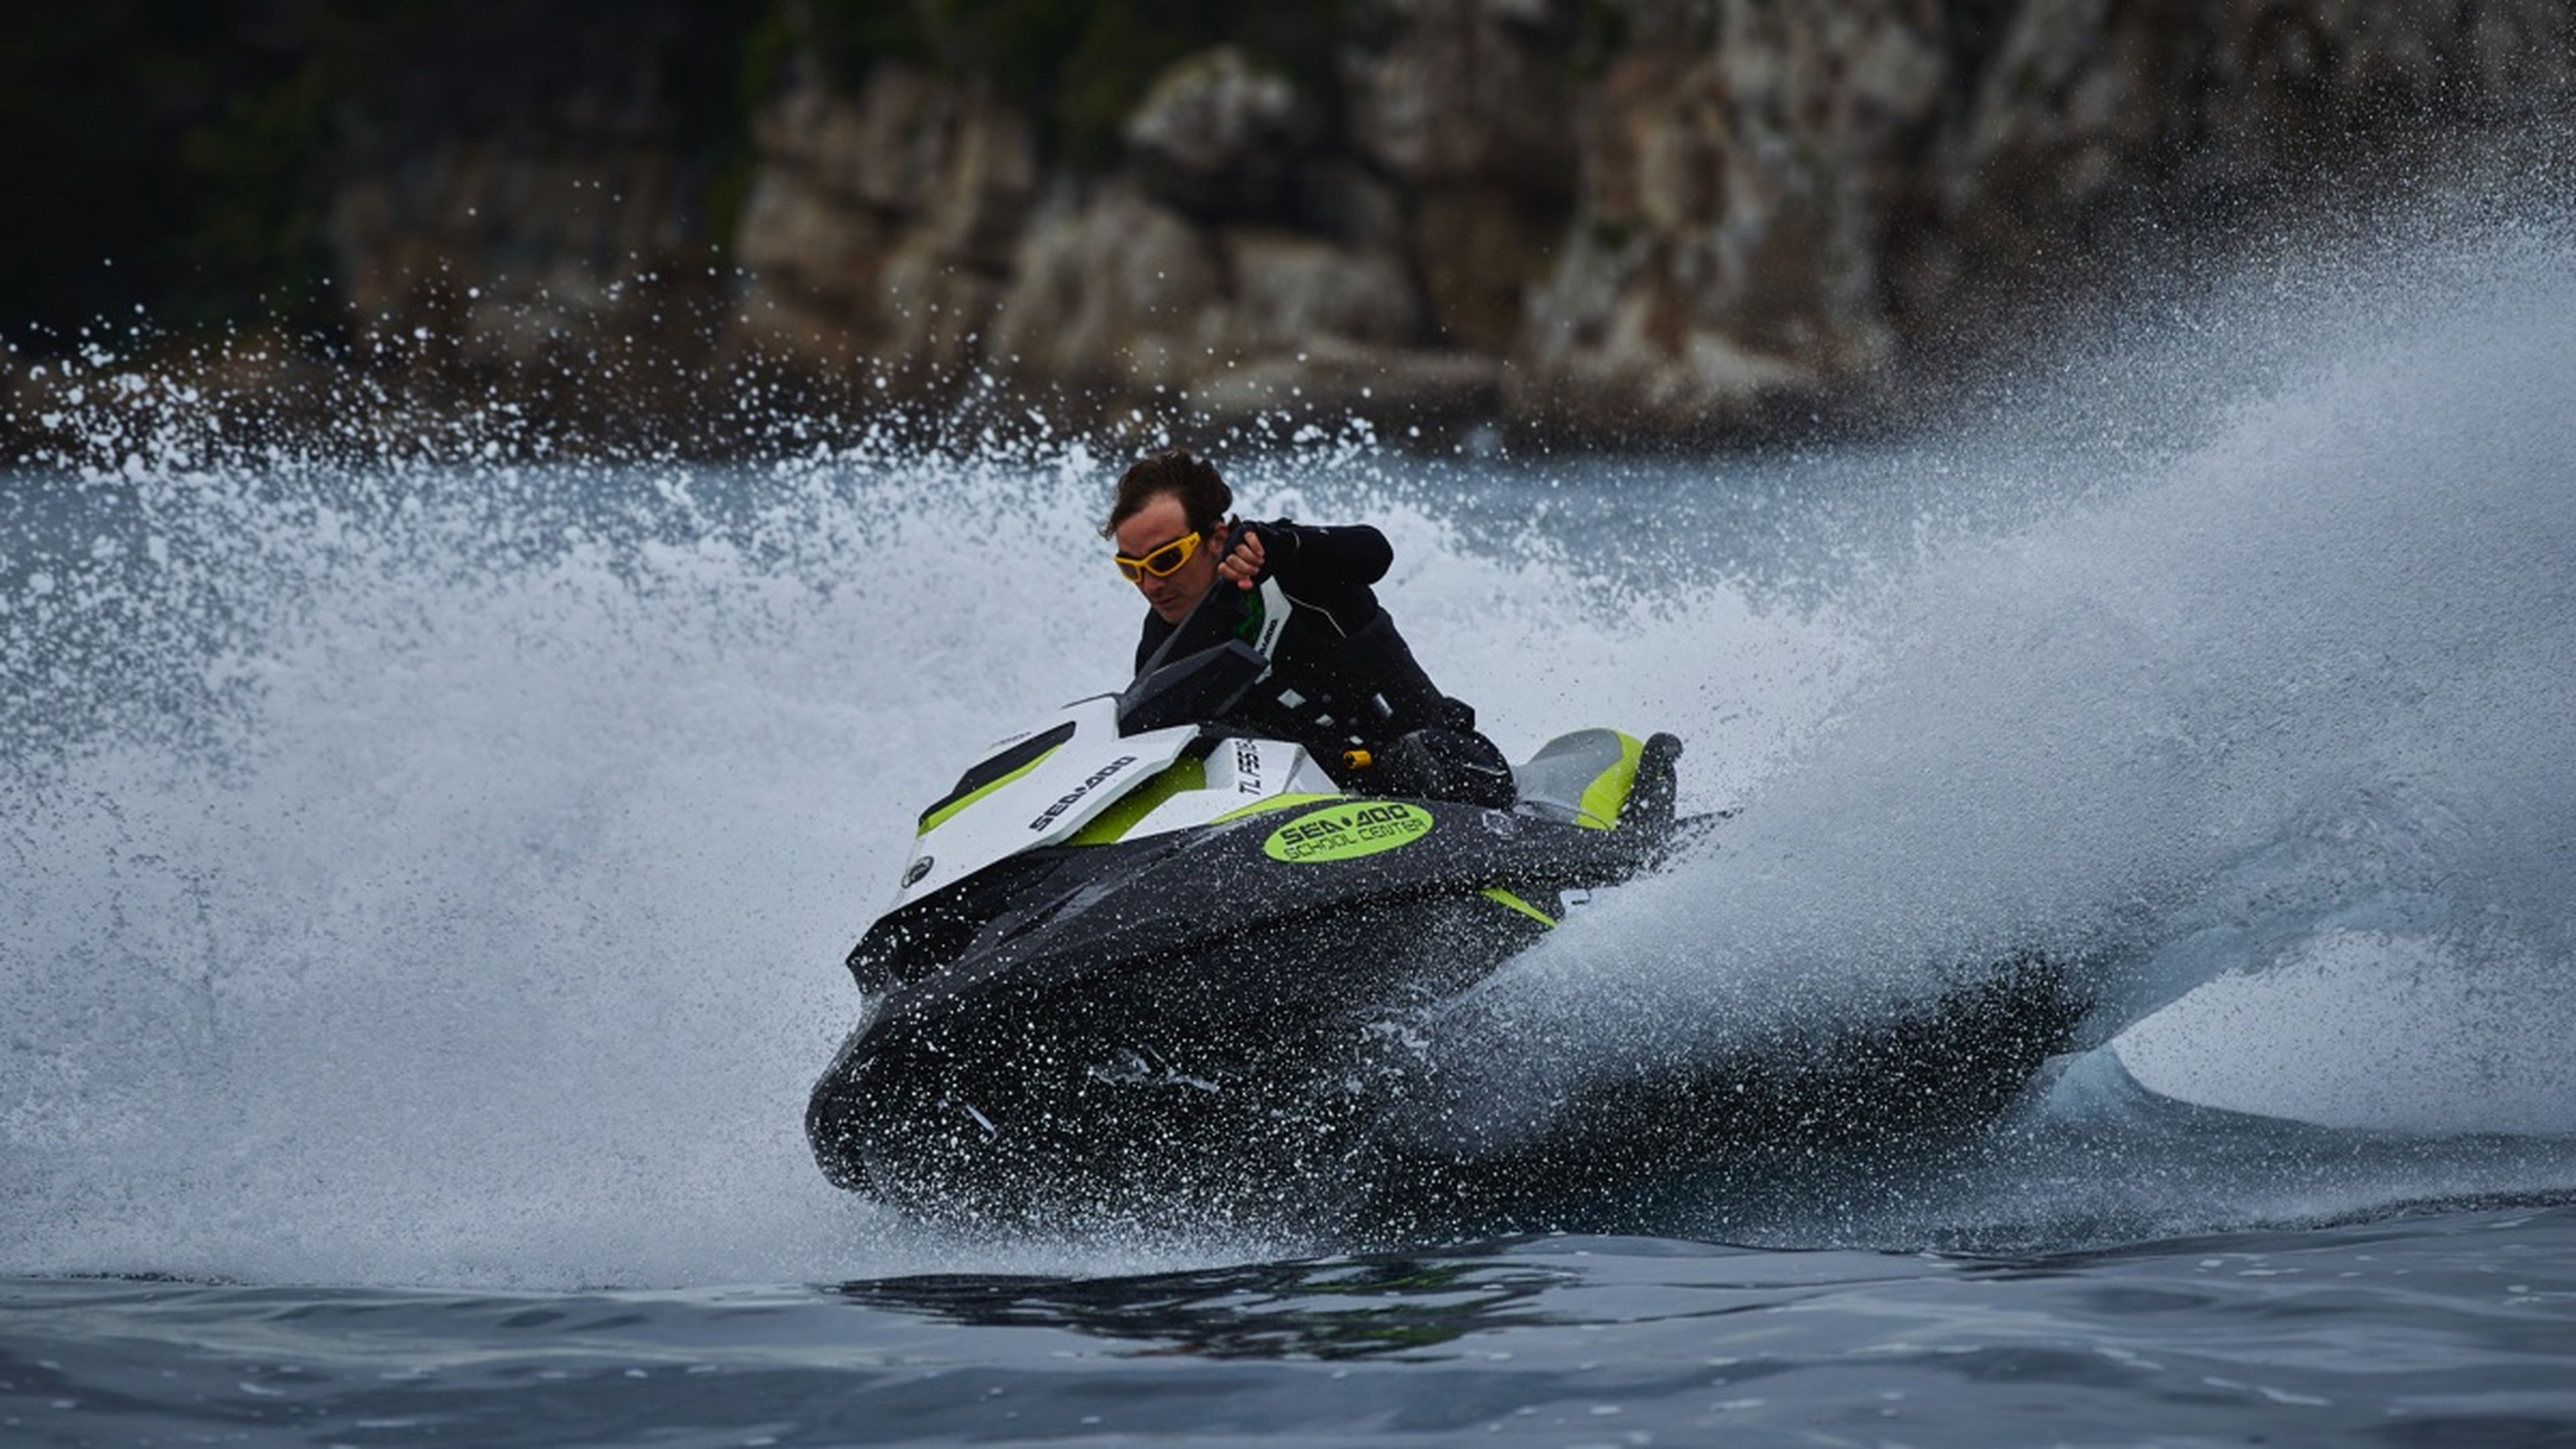 Nueva gama de motos de agua Sea-Doo 2017